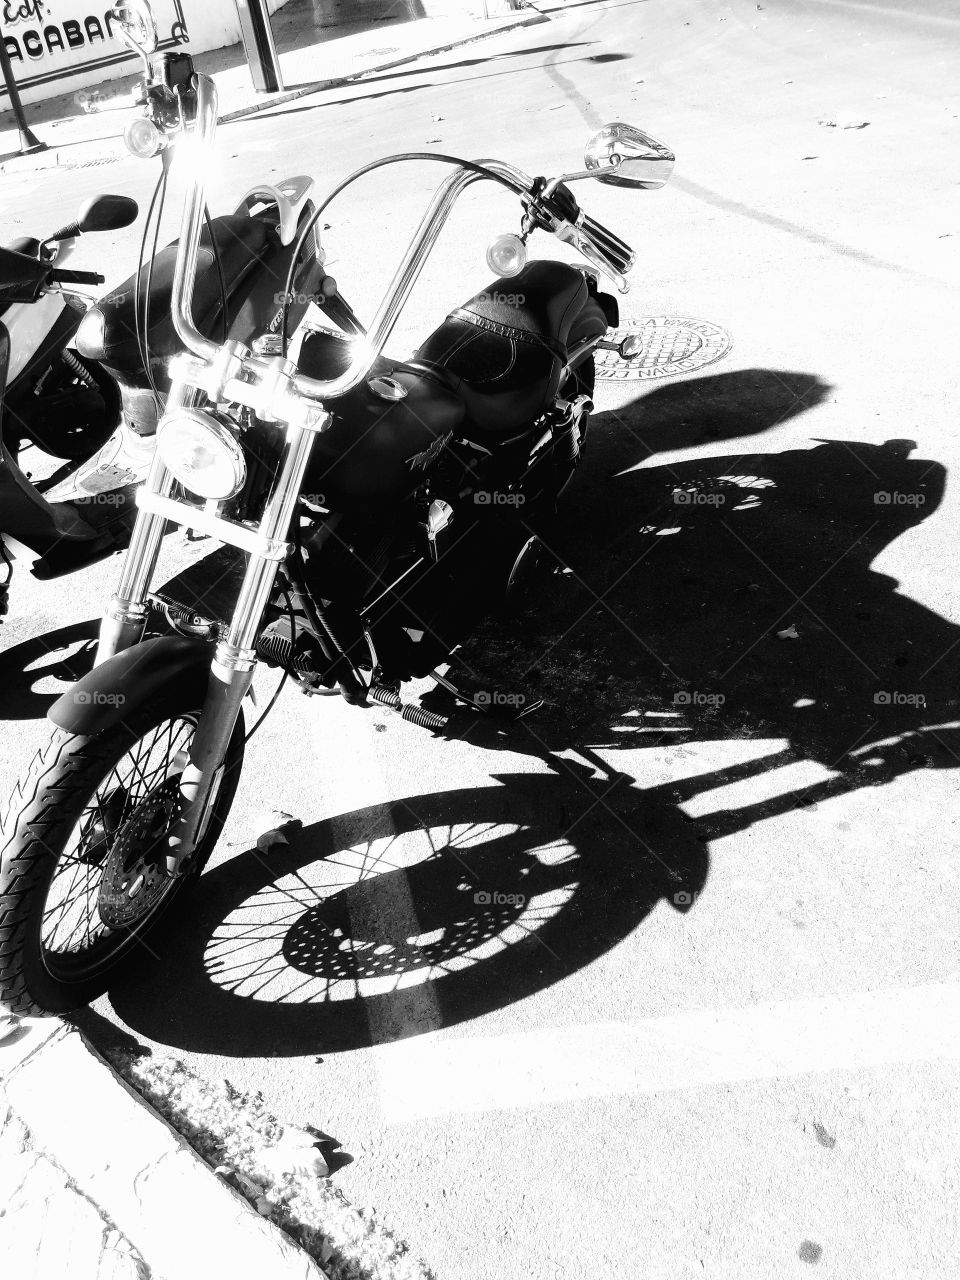 Motorbike and